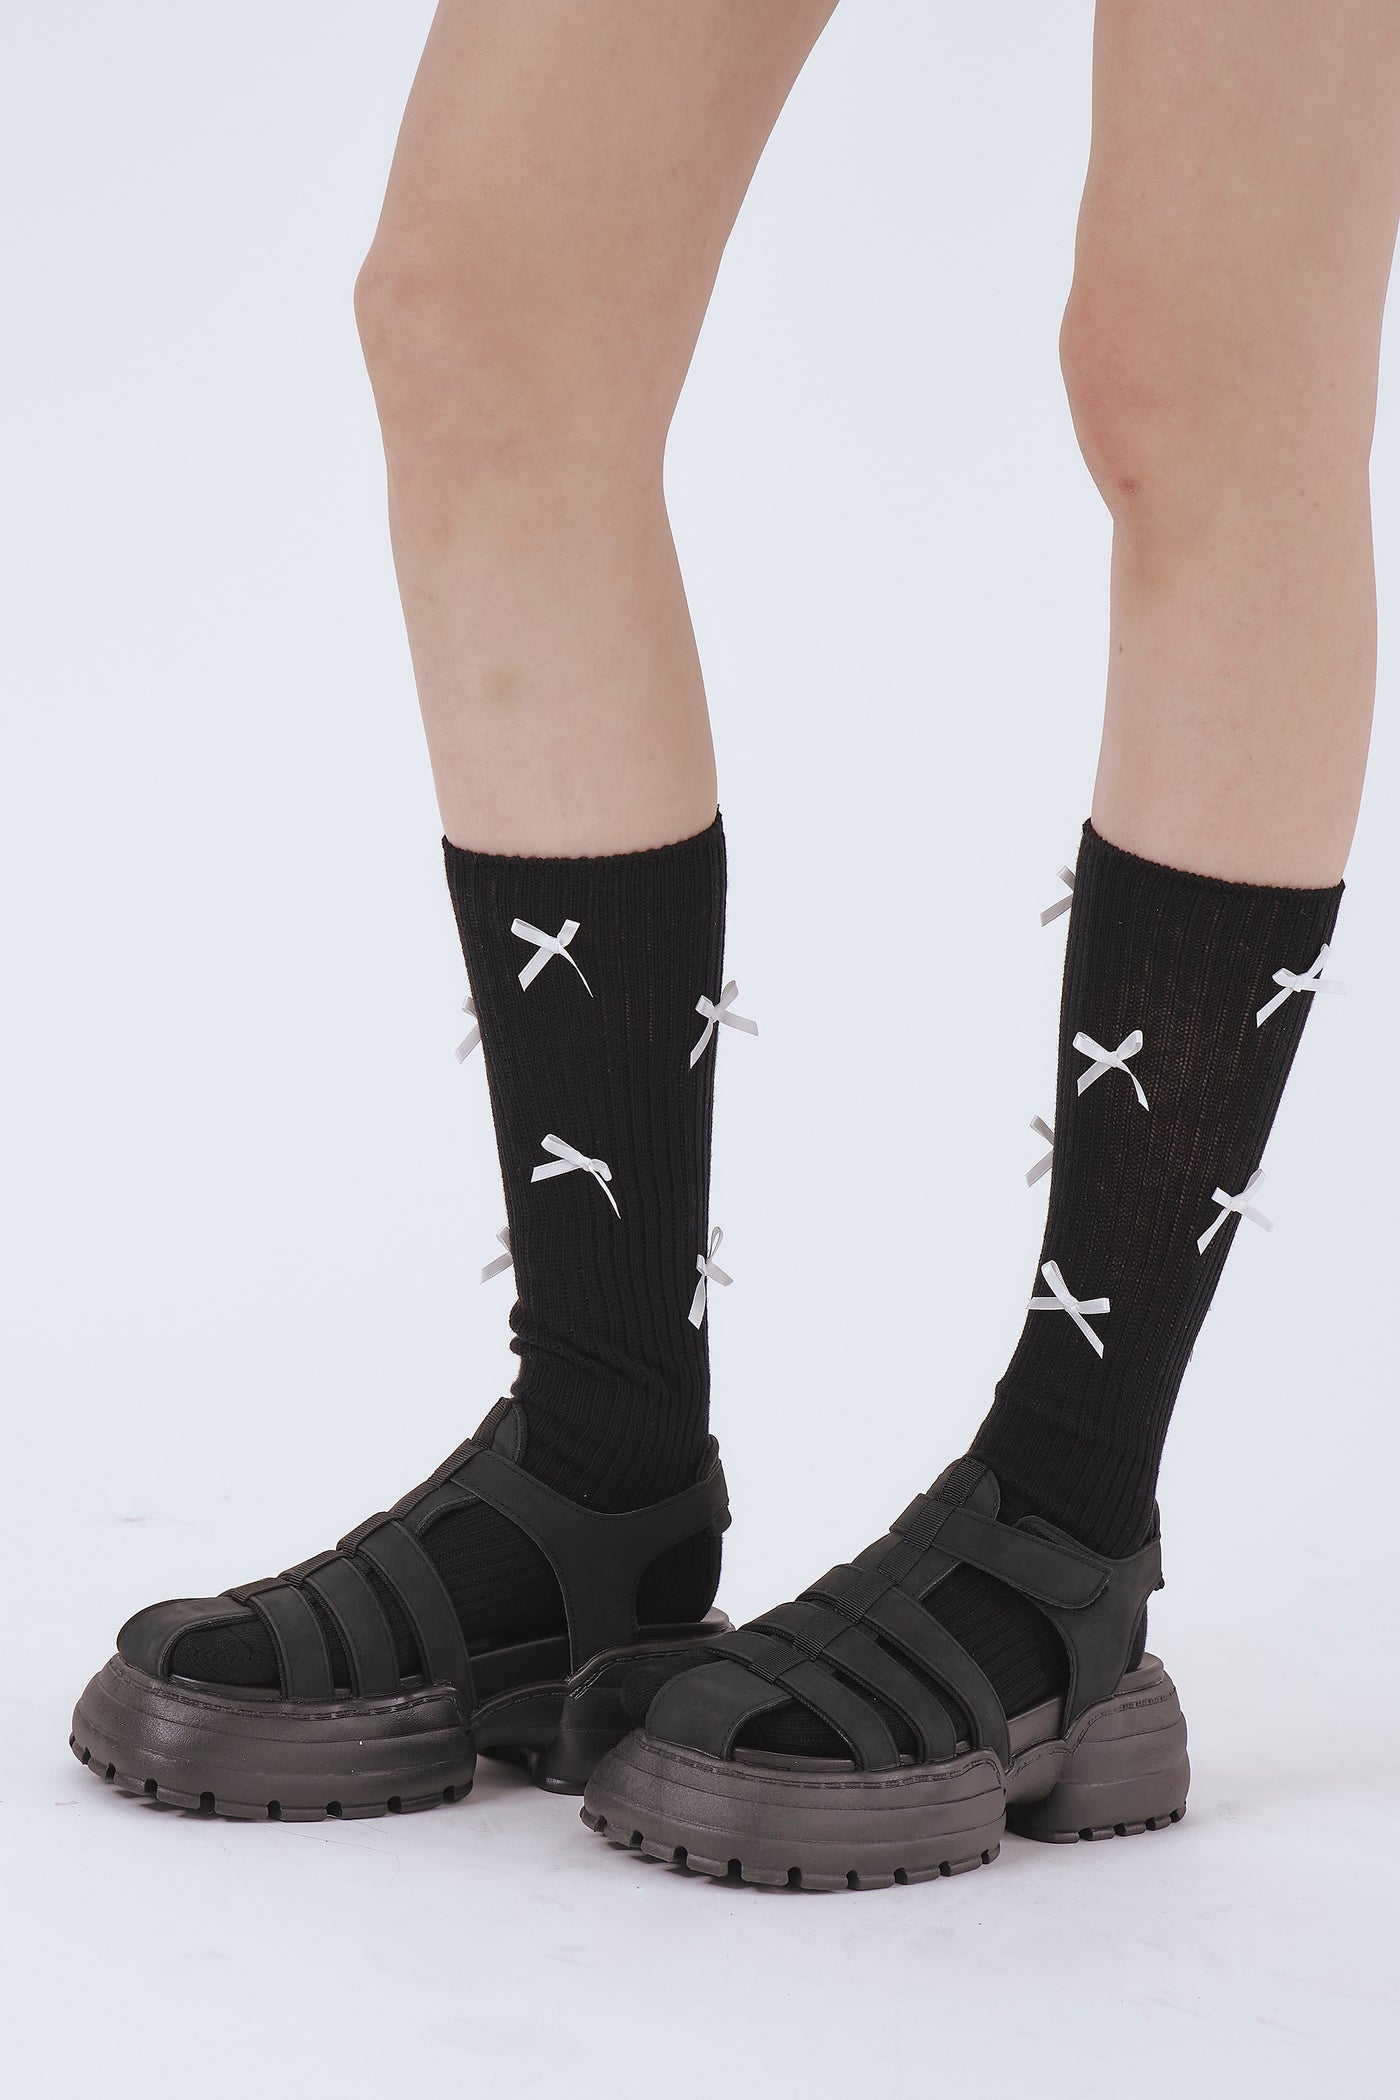 storets.com Petite Ribbon Knee Socks